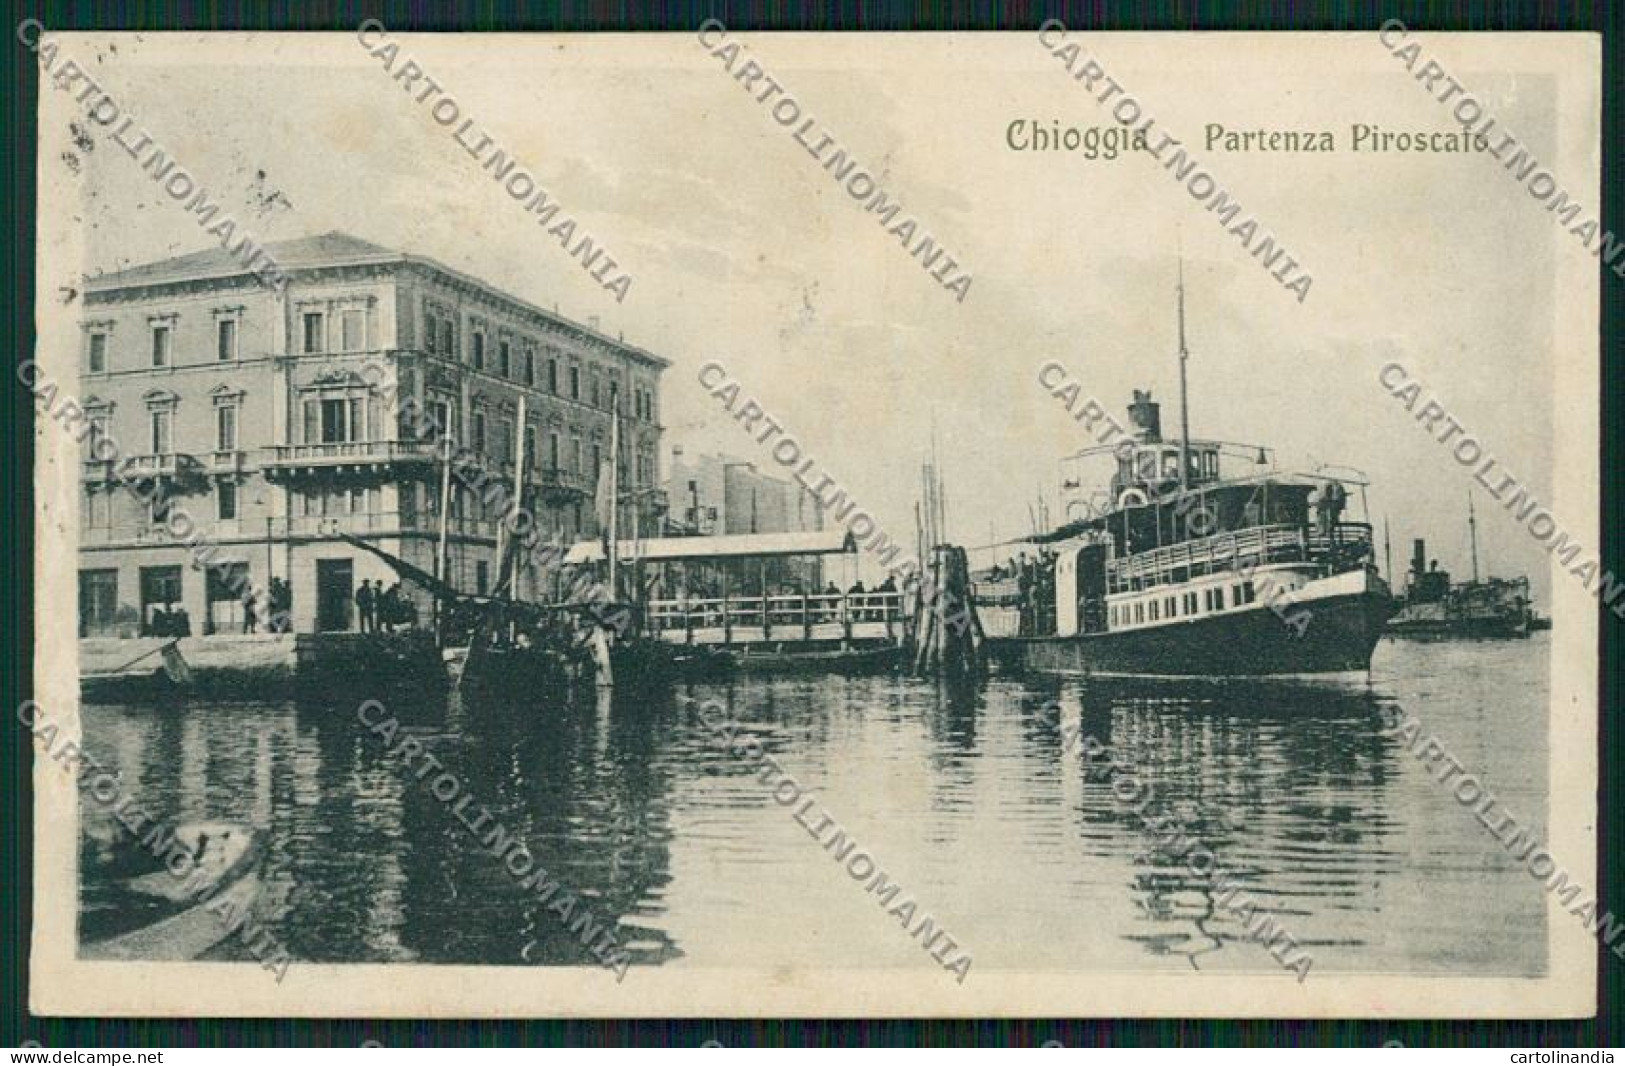 Venezia Chioggia Piroscafo ABRASA Cartolina QK2865 - Venezia